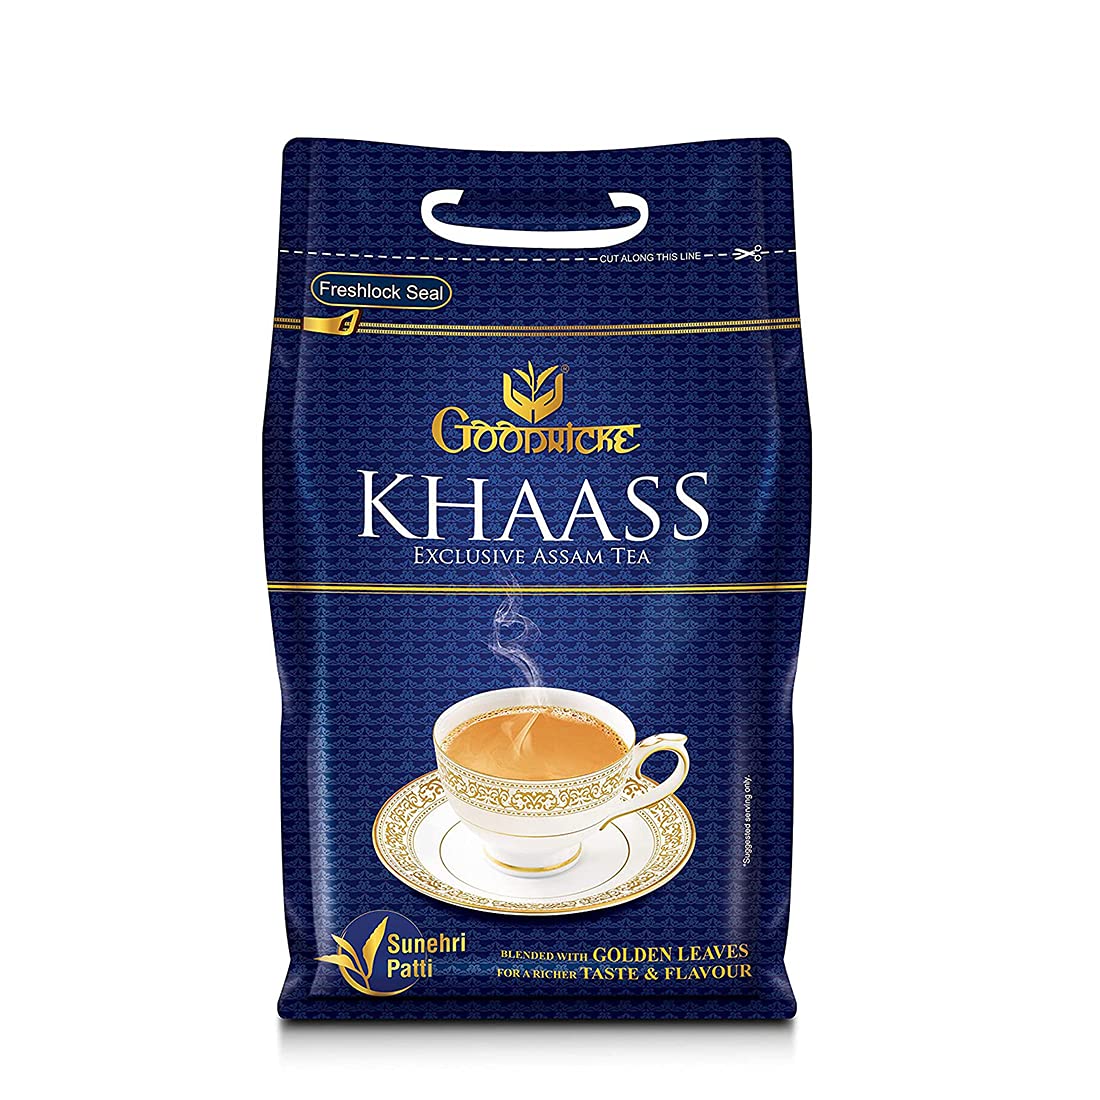 Goodricke Khaass Assam Tea Image